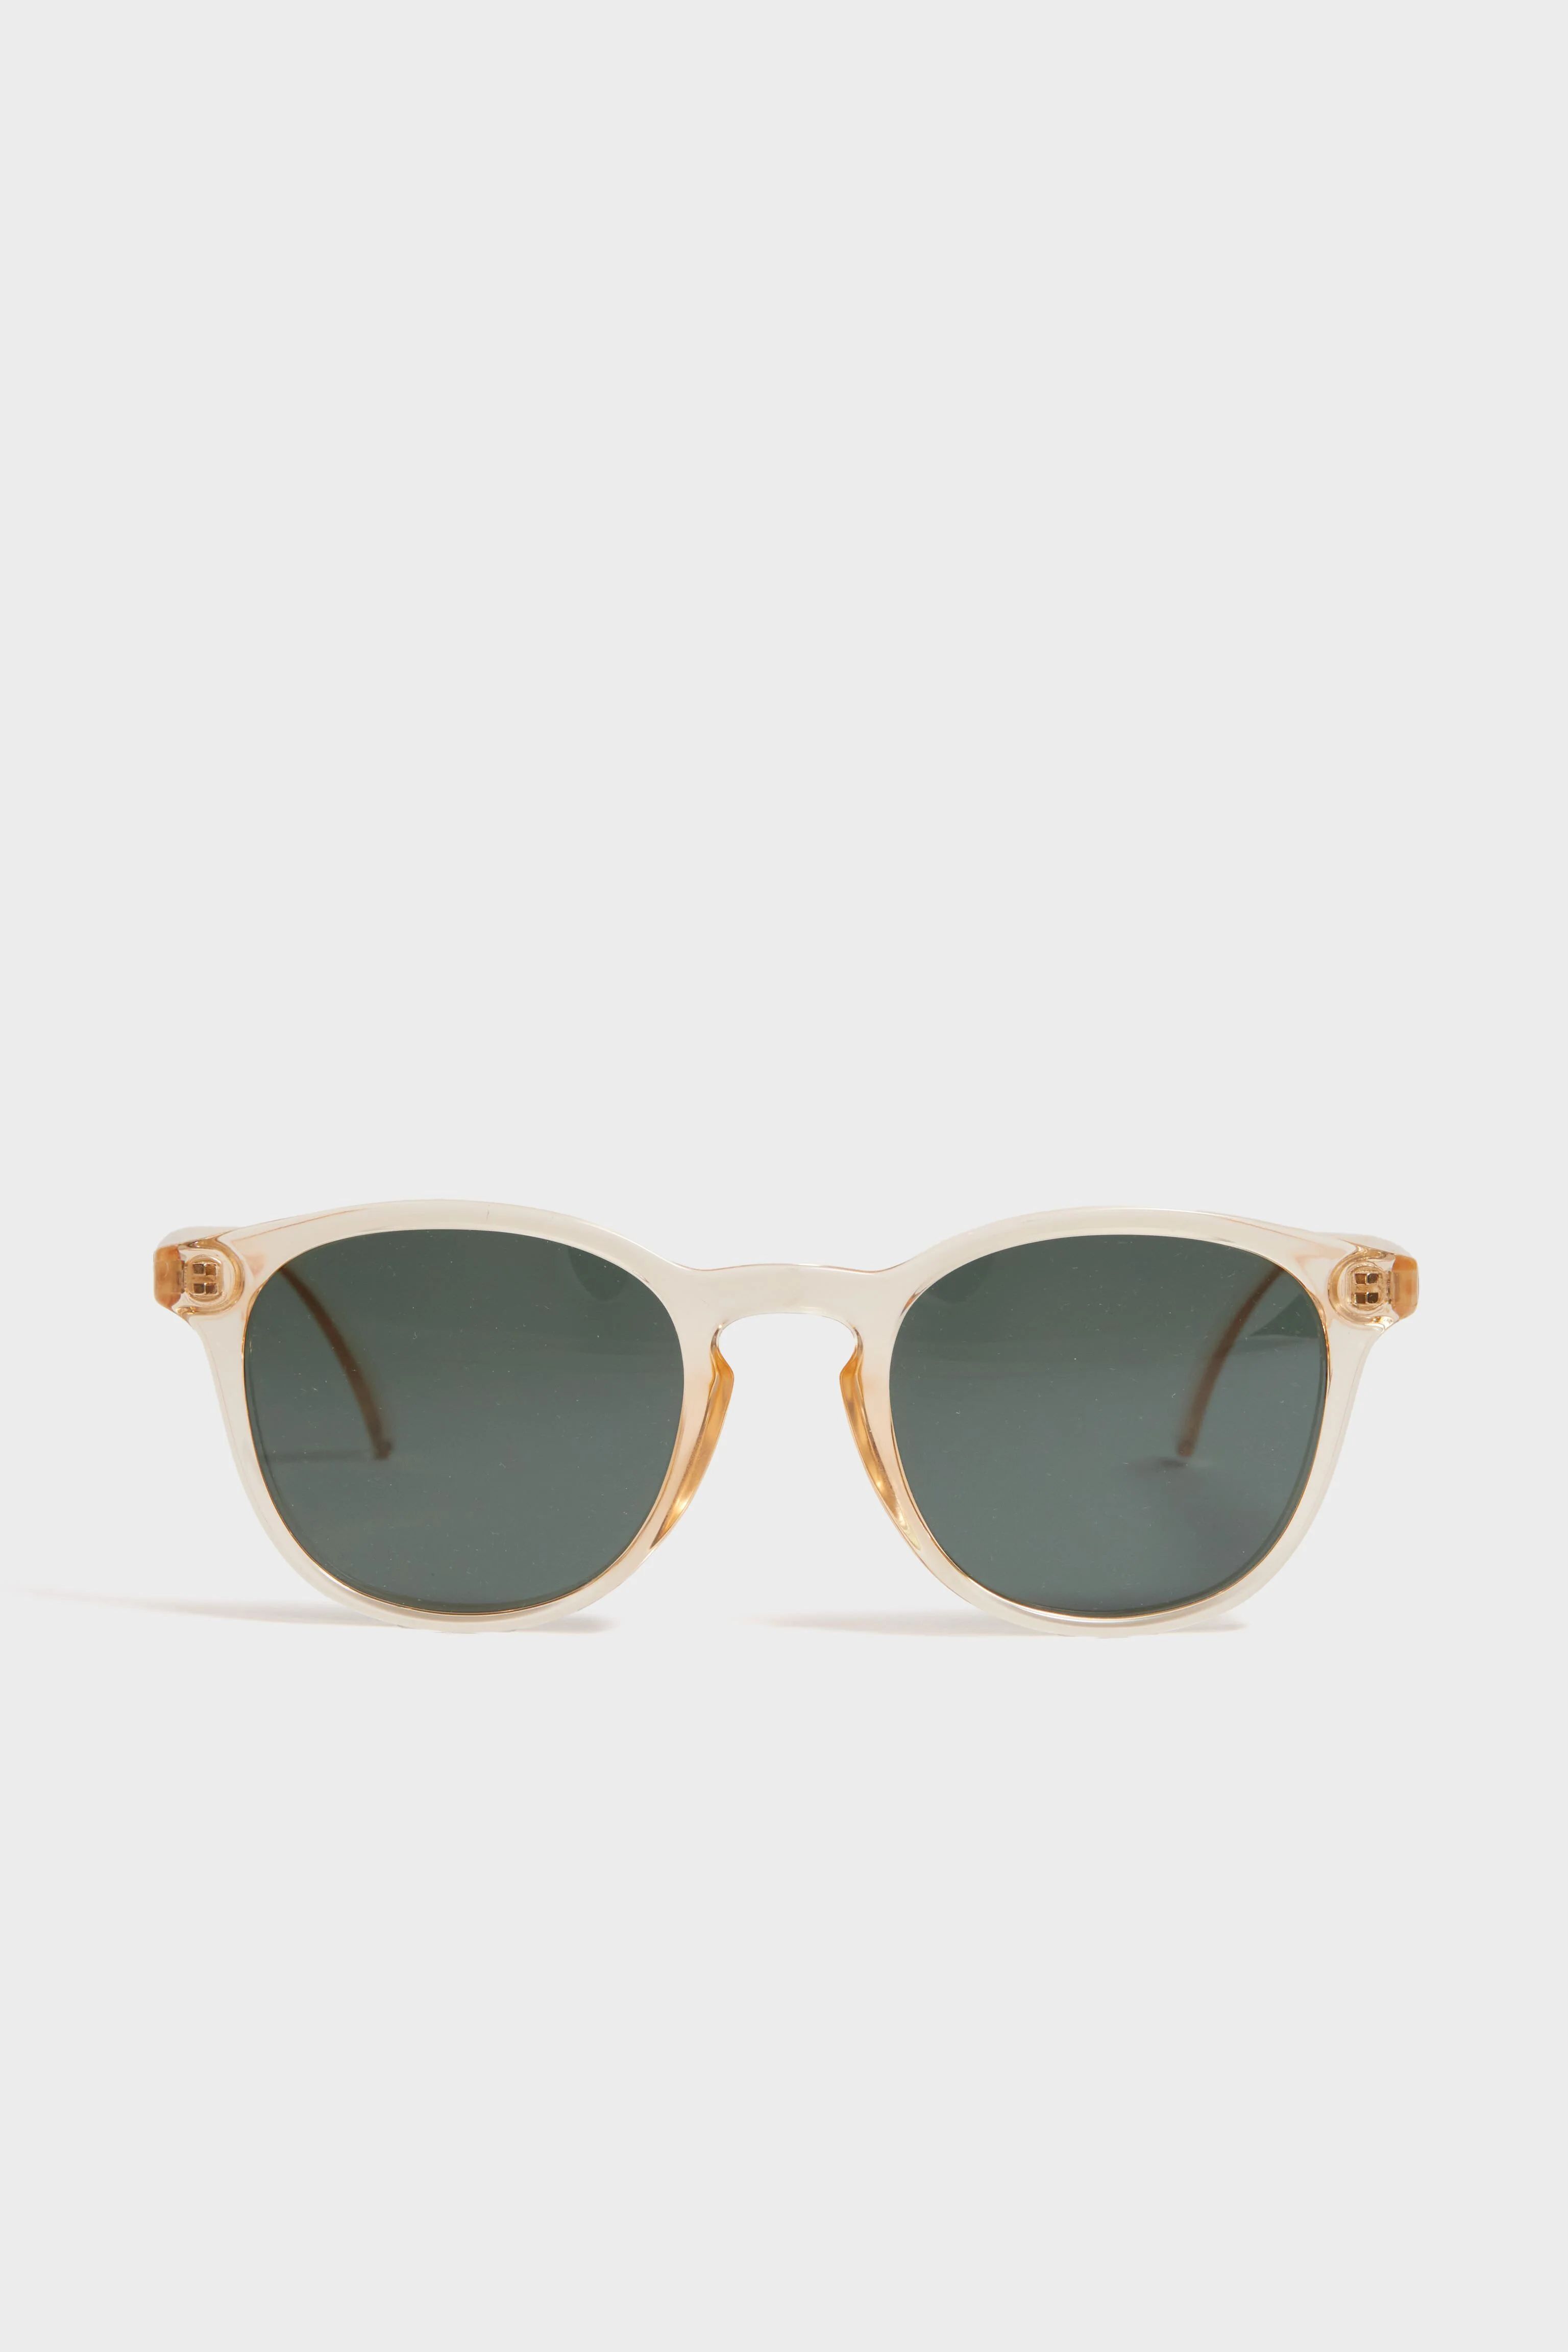 Champagne Forest Yuba Sunglasses | Tuckernuck (US)